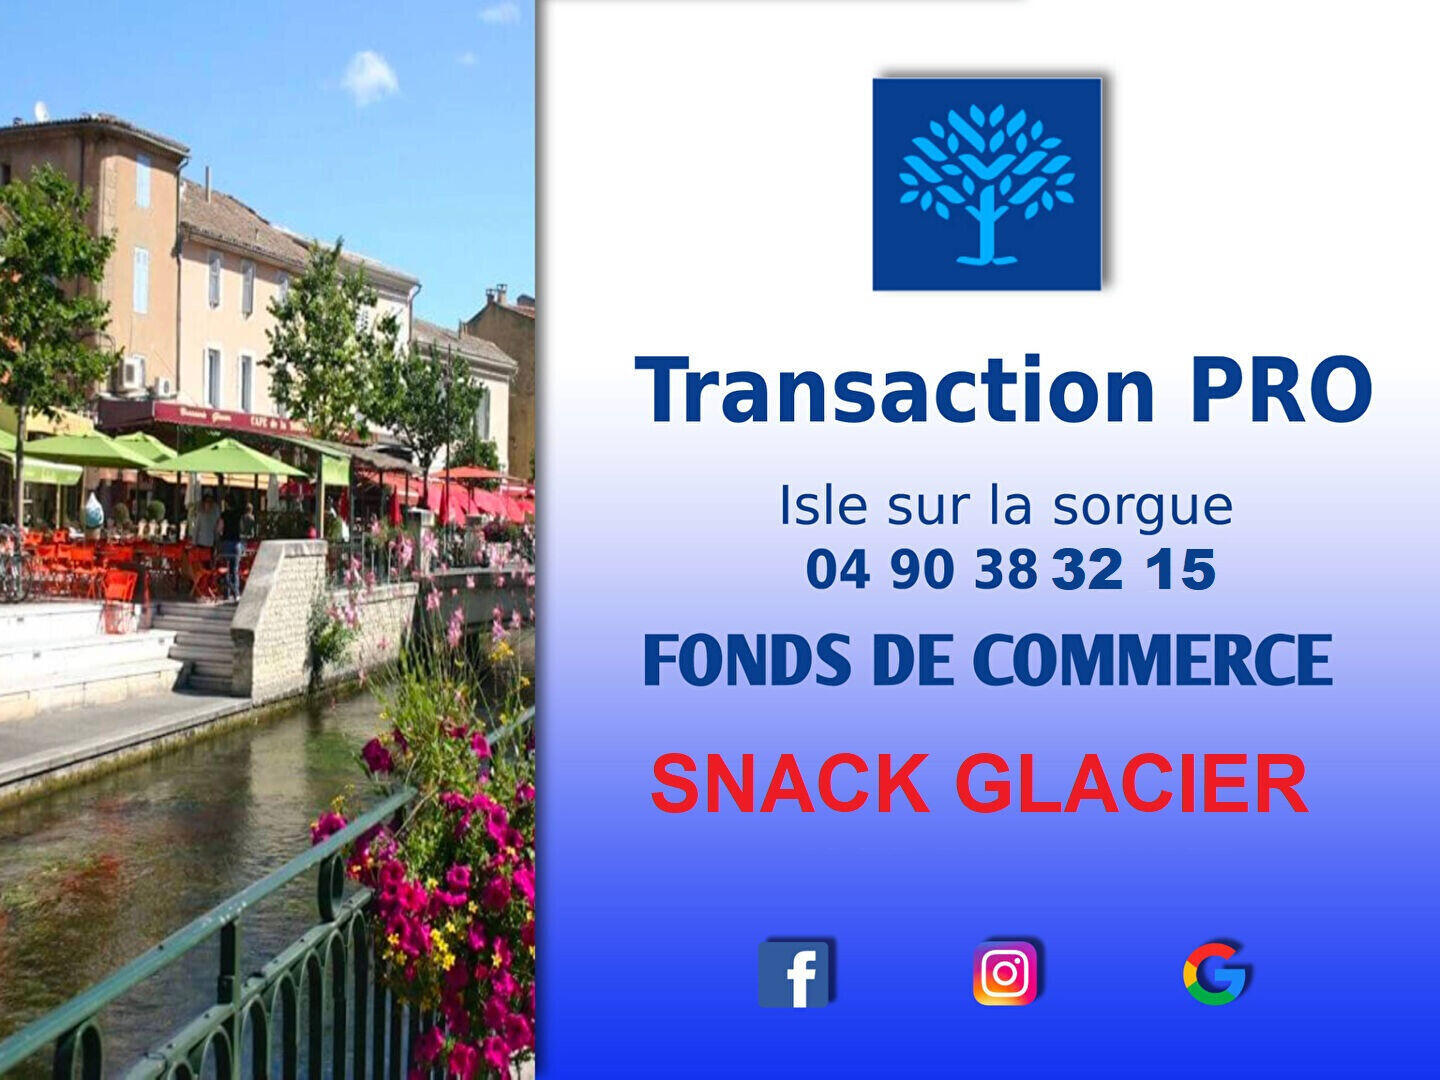 Vente FDC snacking glacier à Fontaine De Vaucluse